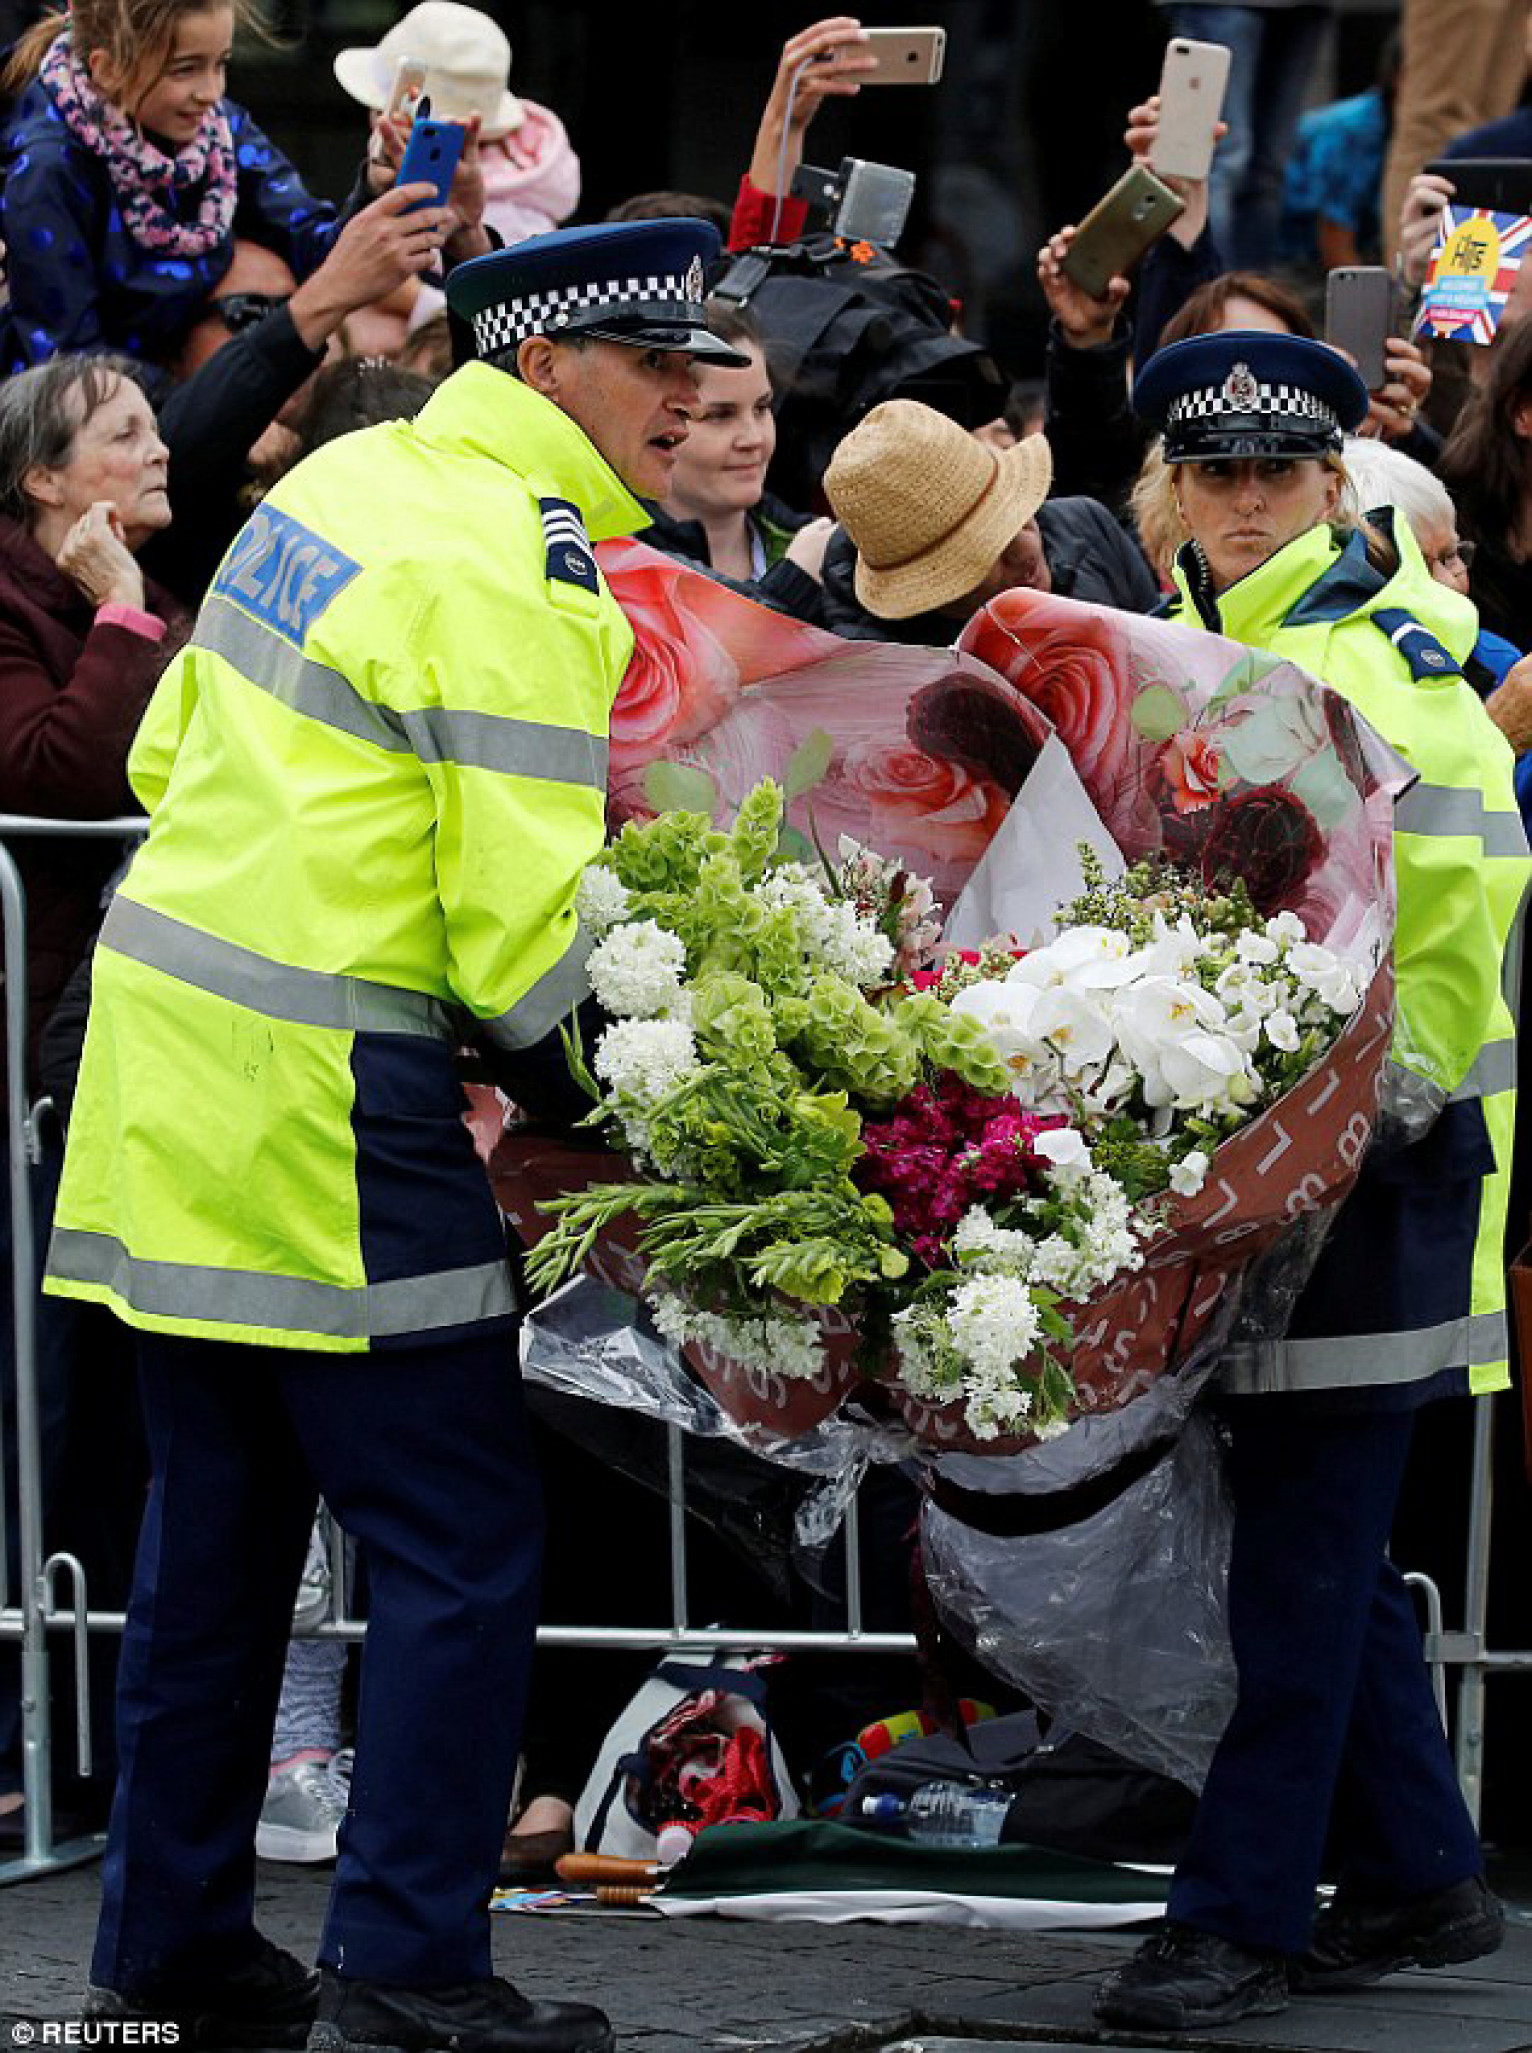 Các sĩ quan cảnh sát ngay lập tức tới hỗ trợ. Tuy nhiên, hai sĩ quan cảnh sát cũng có vẻ đang khá lúng túng để khênh được bó hoa khổng lồ này. 

